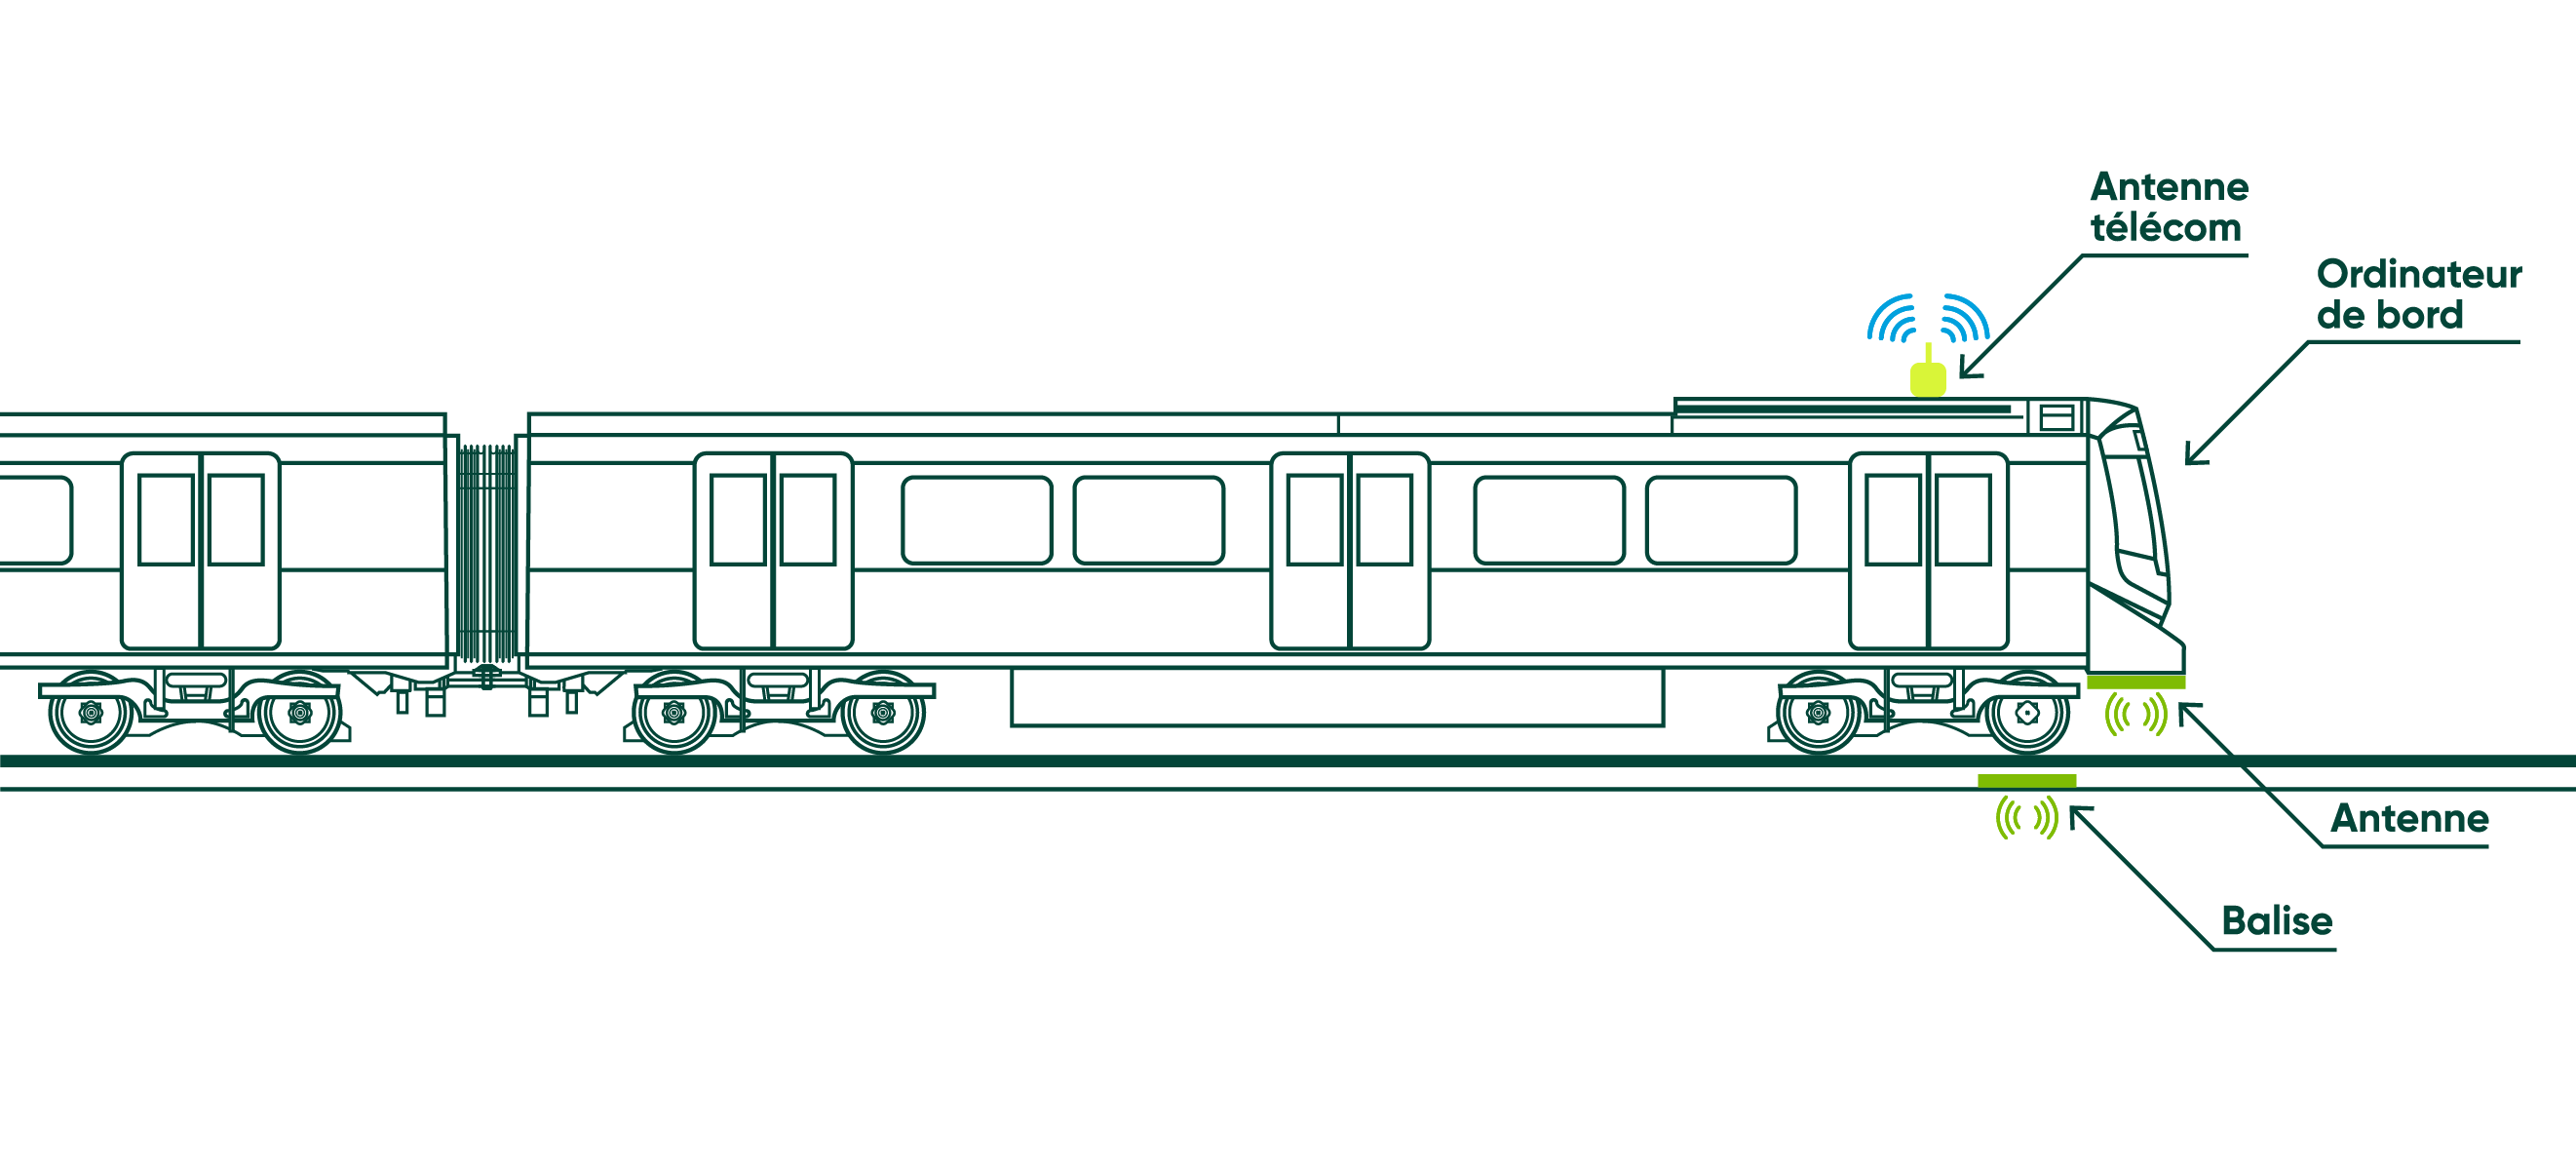 Les éléments d'un métro léger 100% automatisé comme le Réseau express métropolitain